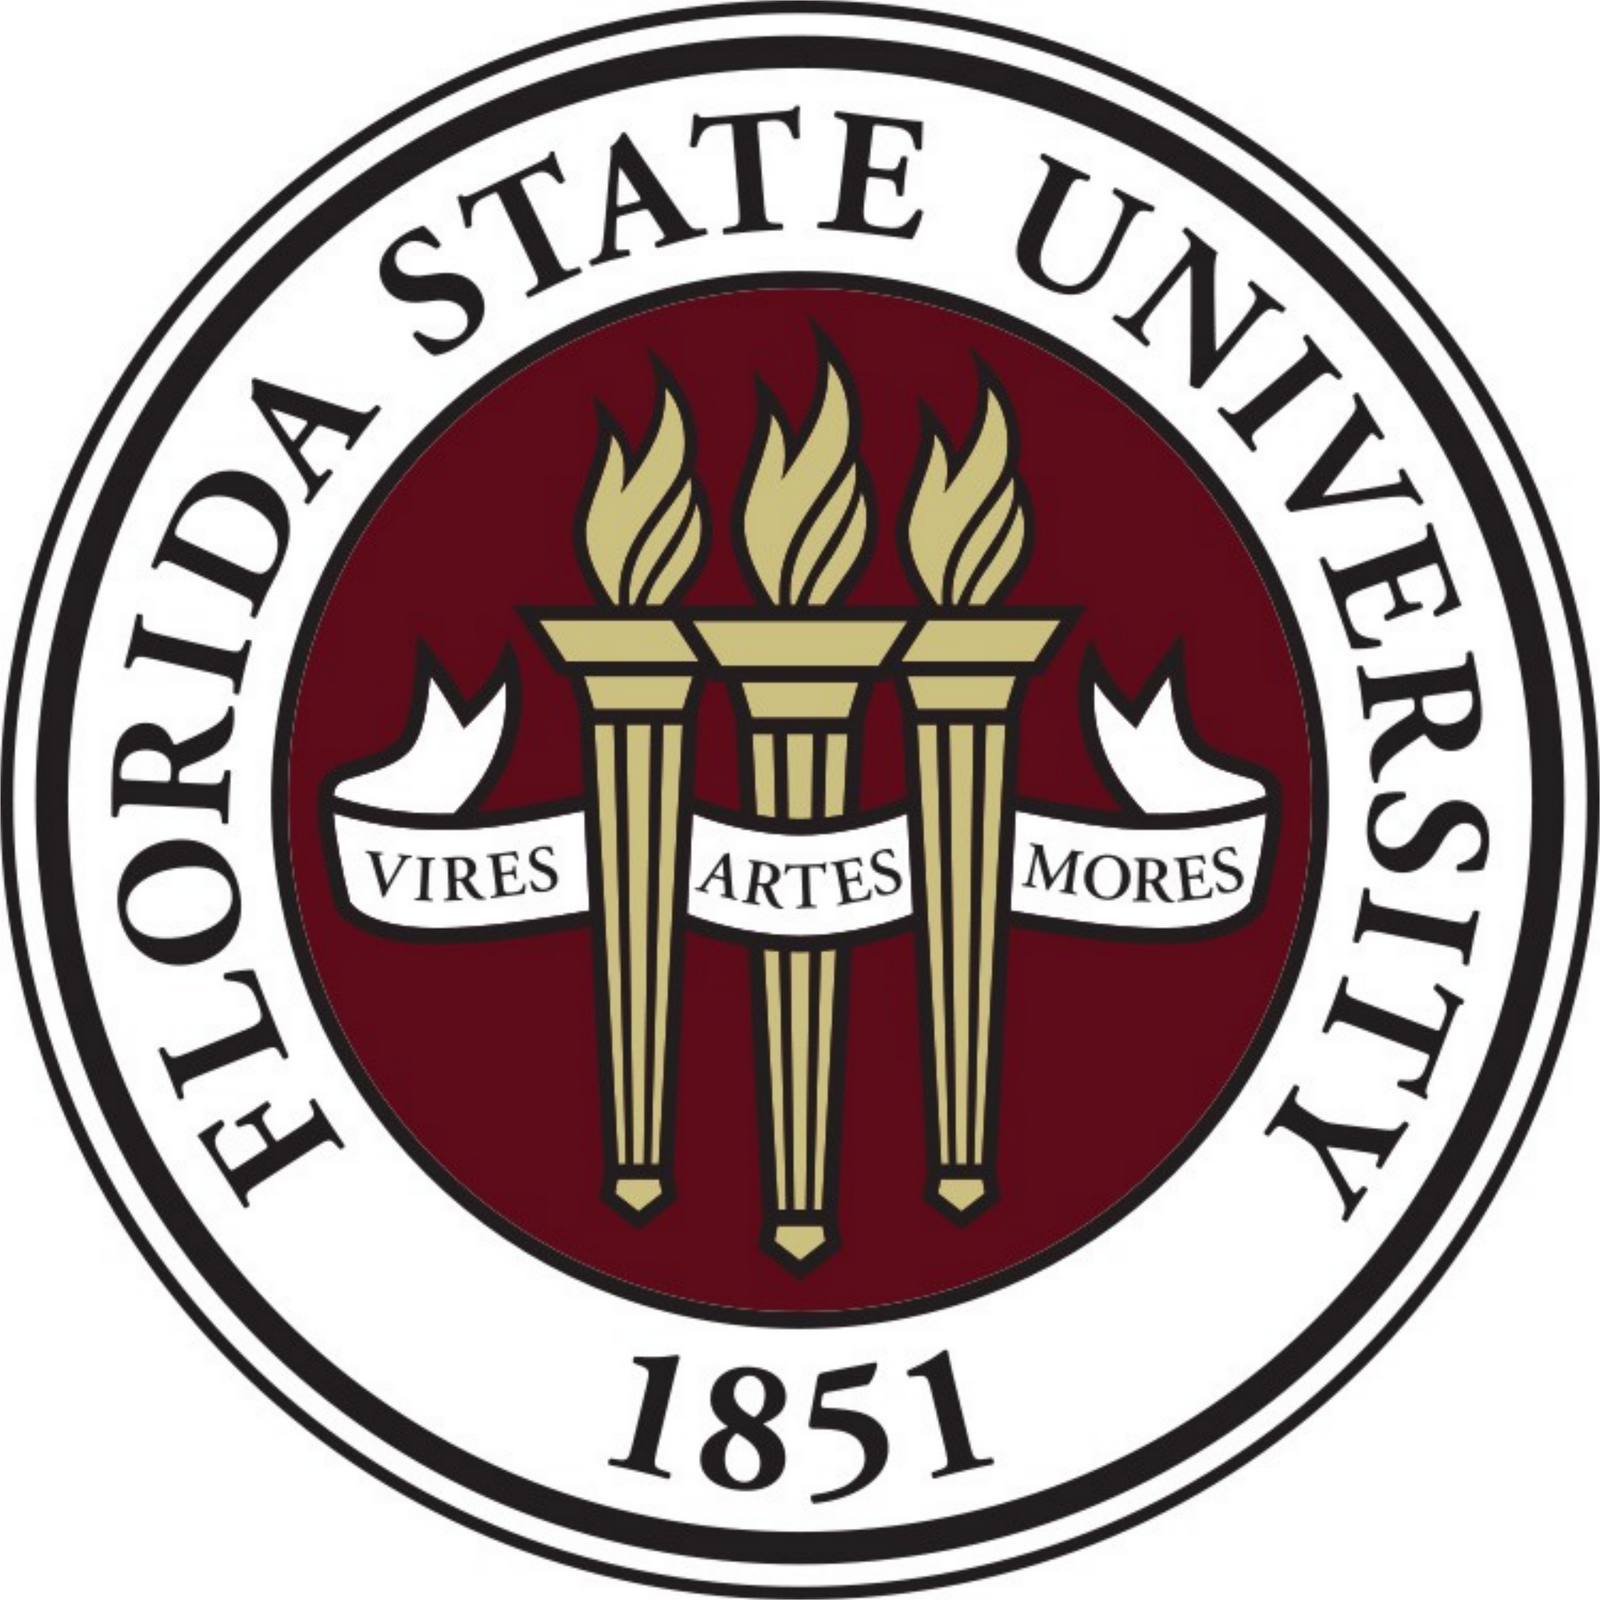 Florida State Seal Wallpaper - Florida State University Emblem - HD Wallpaper 